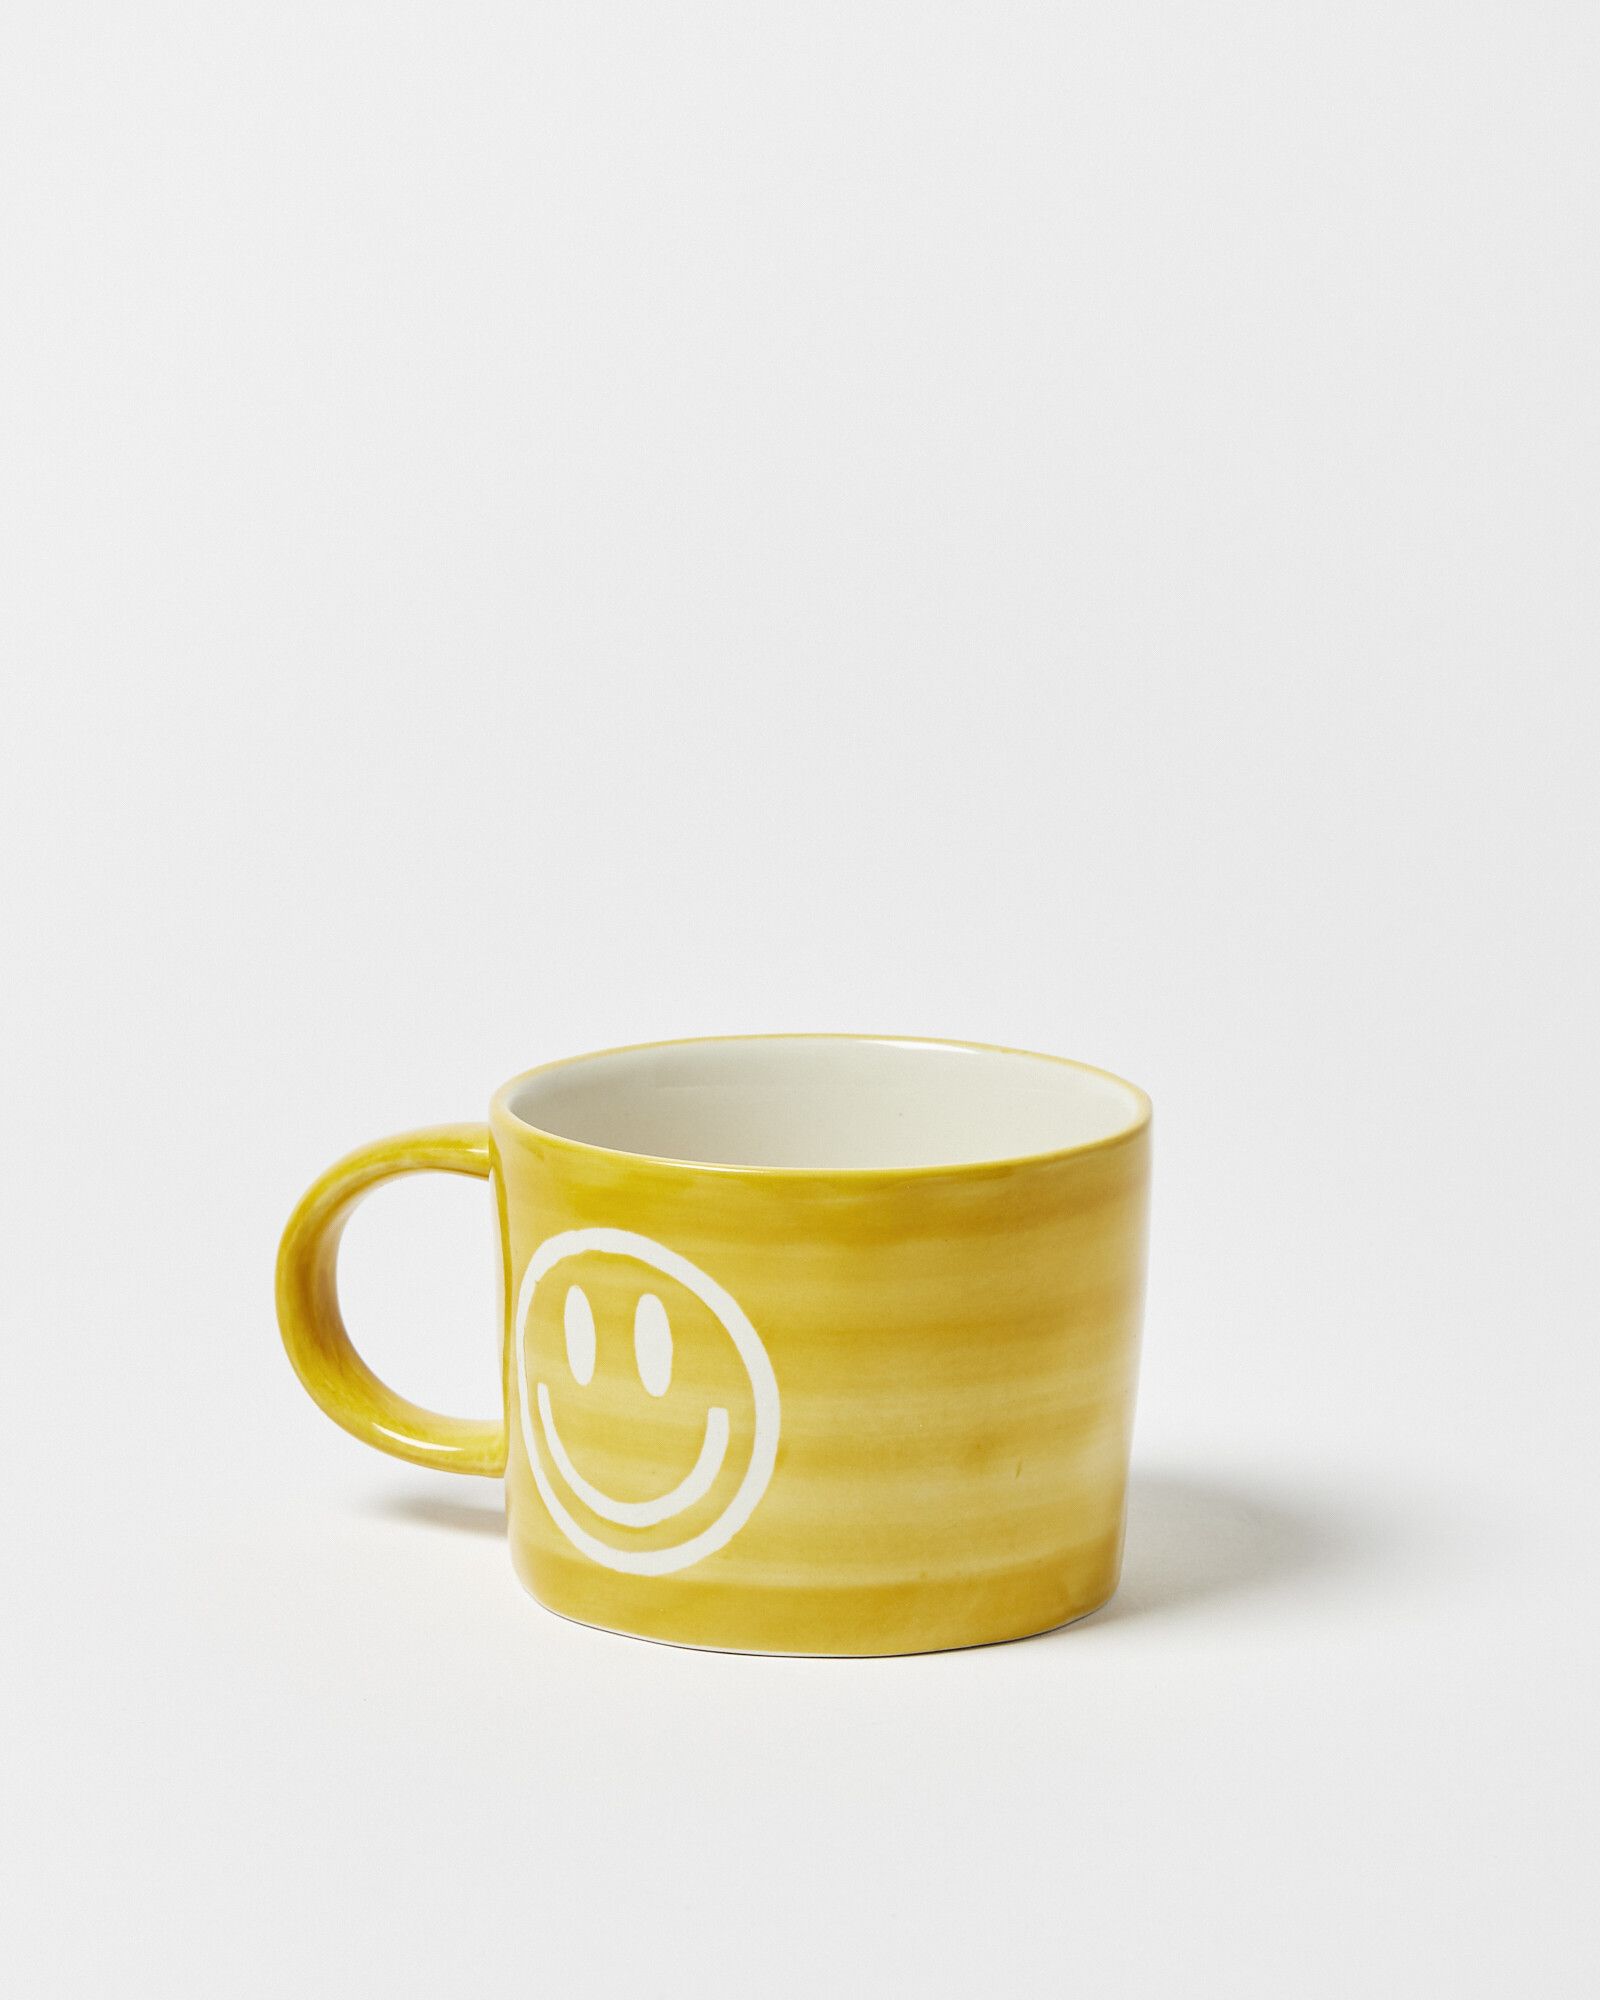 Smiley Face Yellow Ceramic Mug | Oliver Bonas | Oliver Bonas (Global)